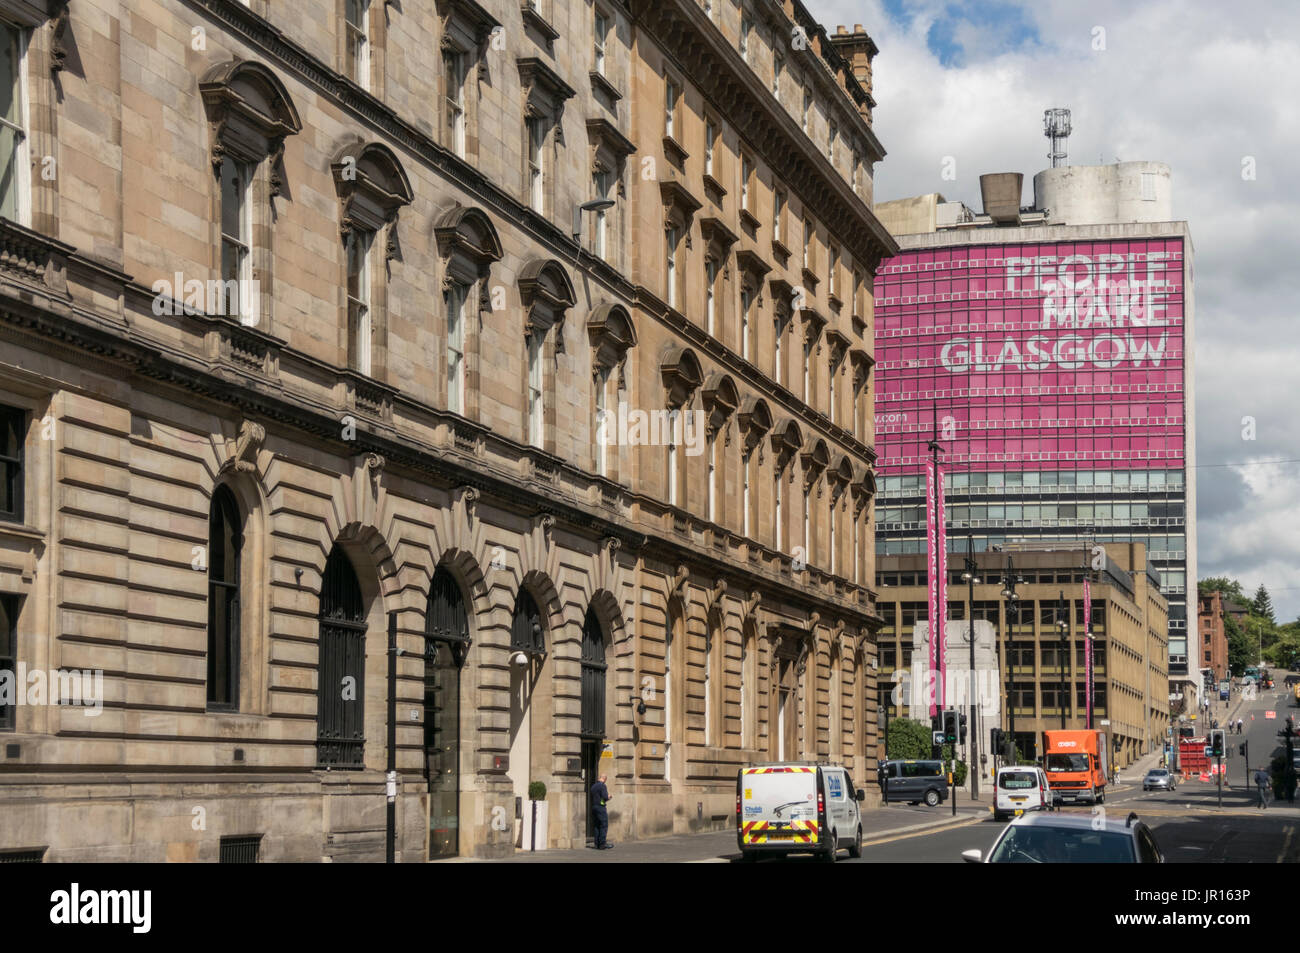 Large People Make Glasgow sign amongst Glasgow architecture, Glasgow, Scotland, UK Stock Photo